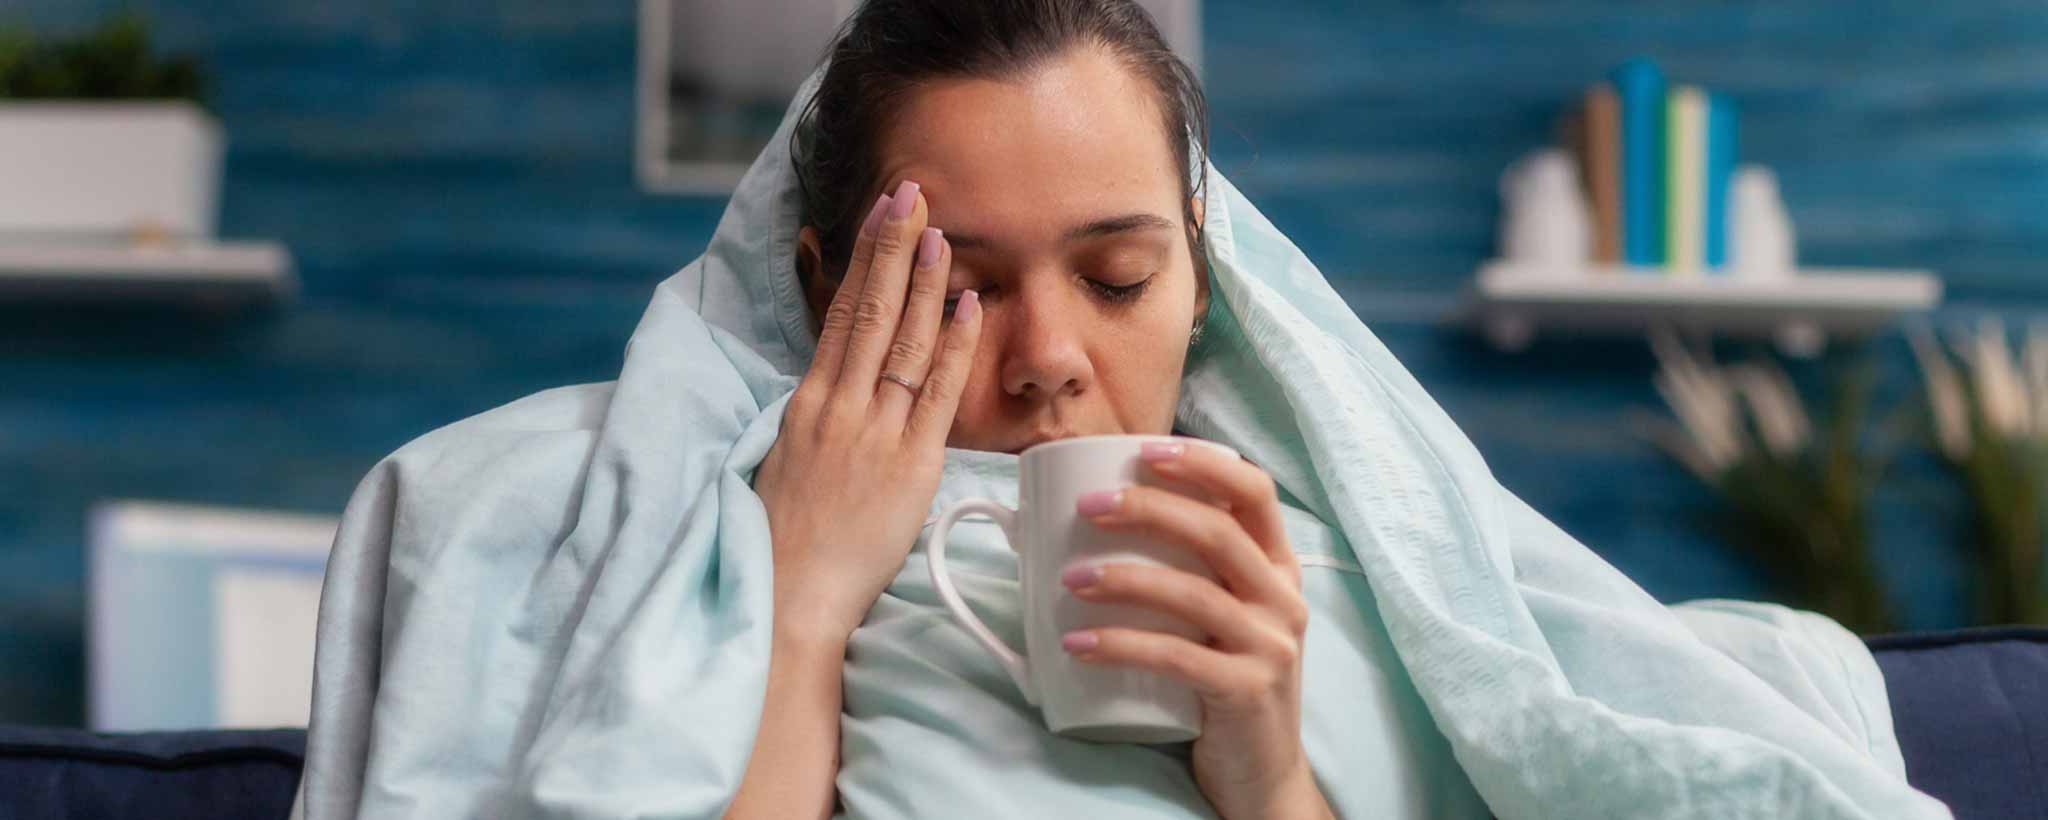 'Lady sick with flu'